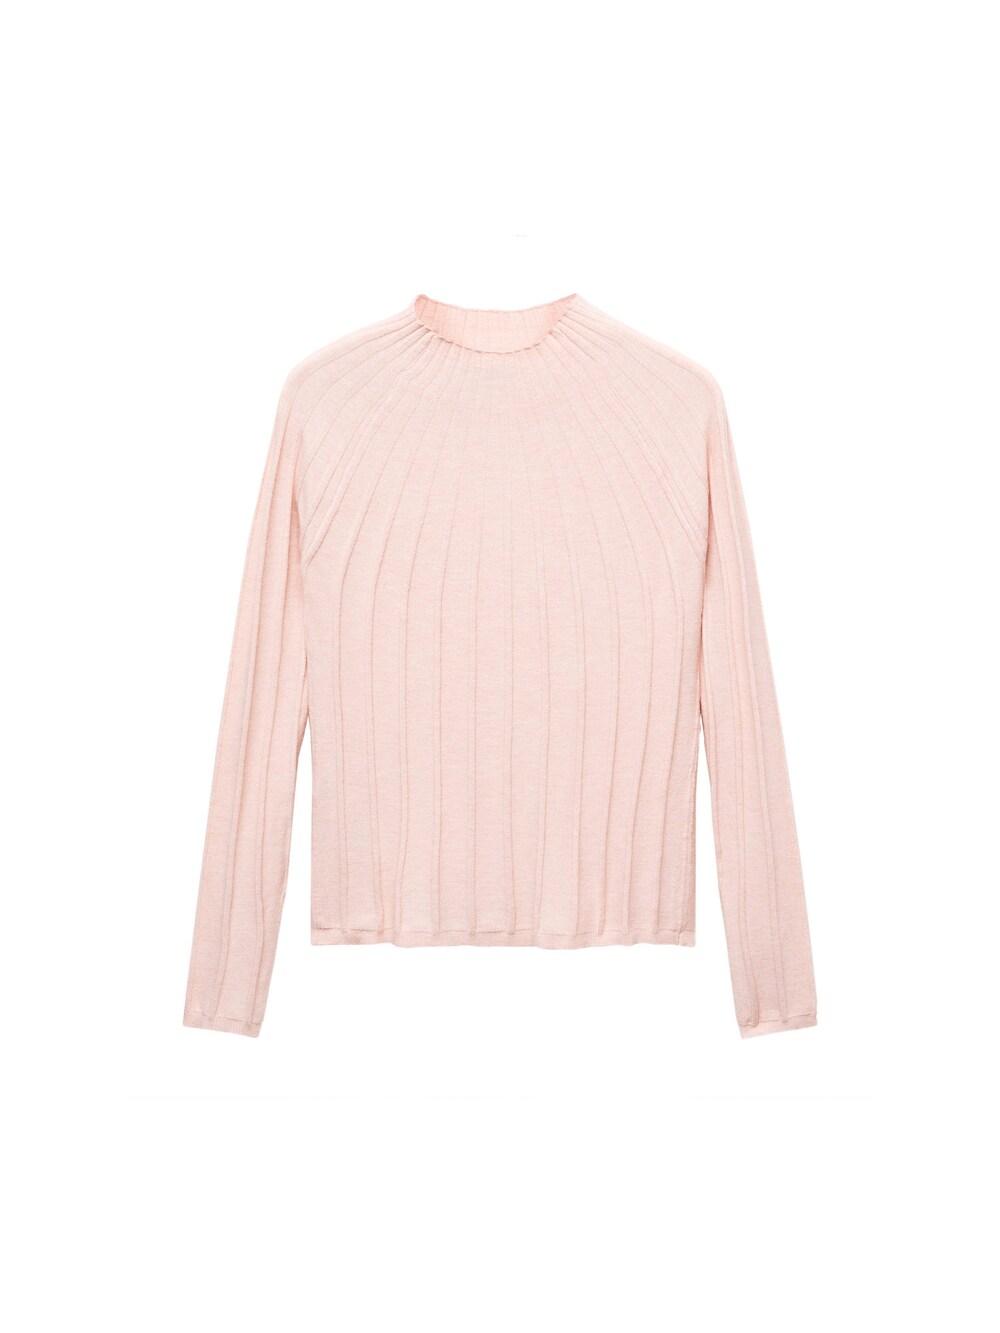 Свитер MANGO, розовый свитер mango размер 40 розовый